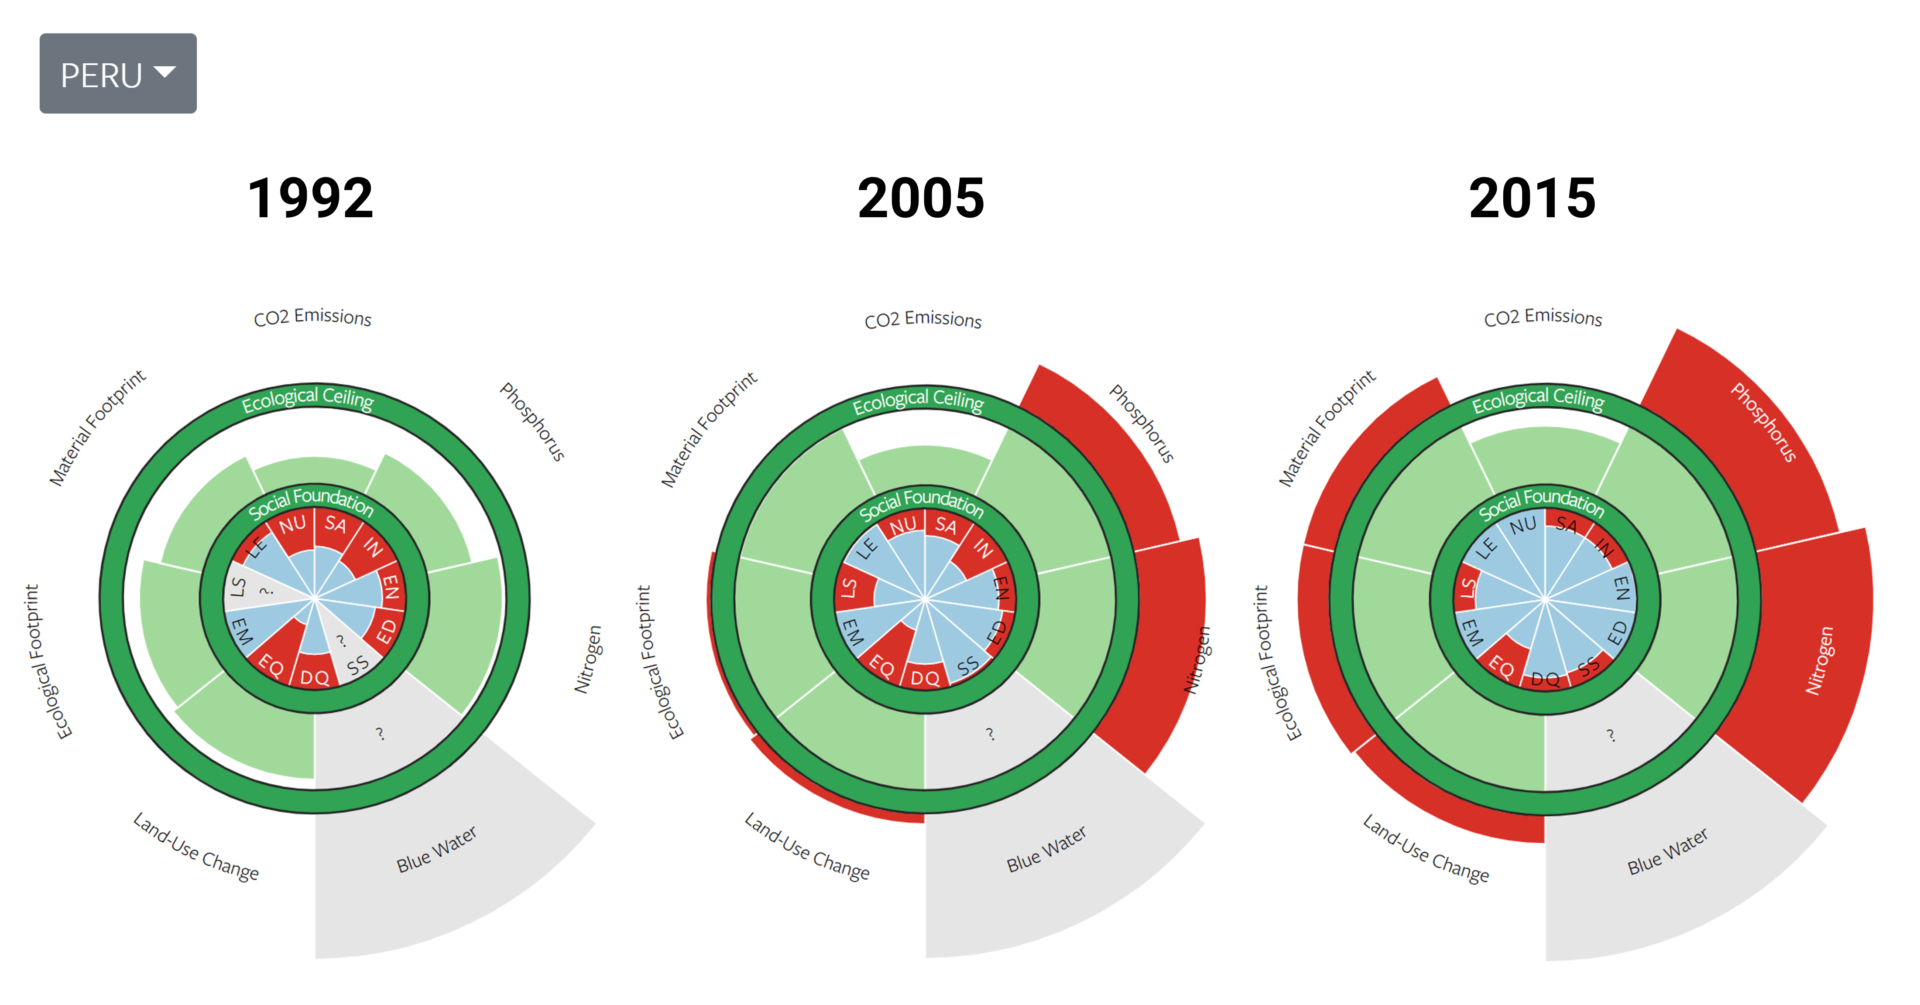 Peru doughnuts in 1992, 2005, and 2015